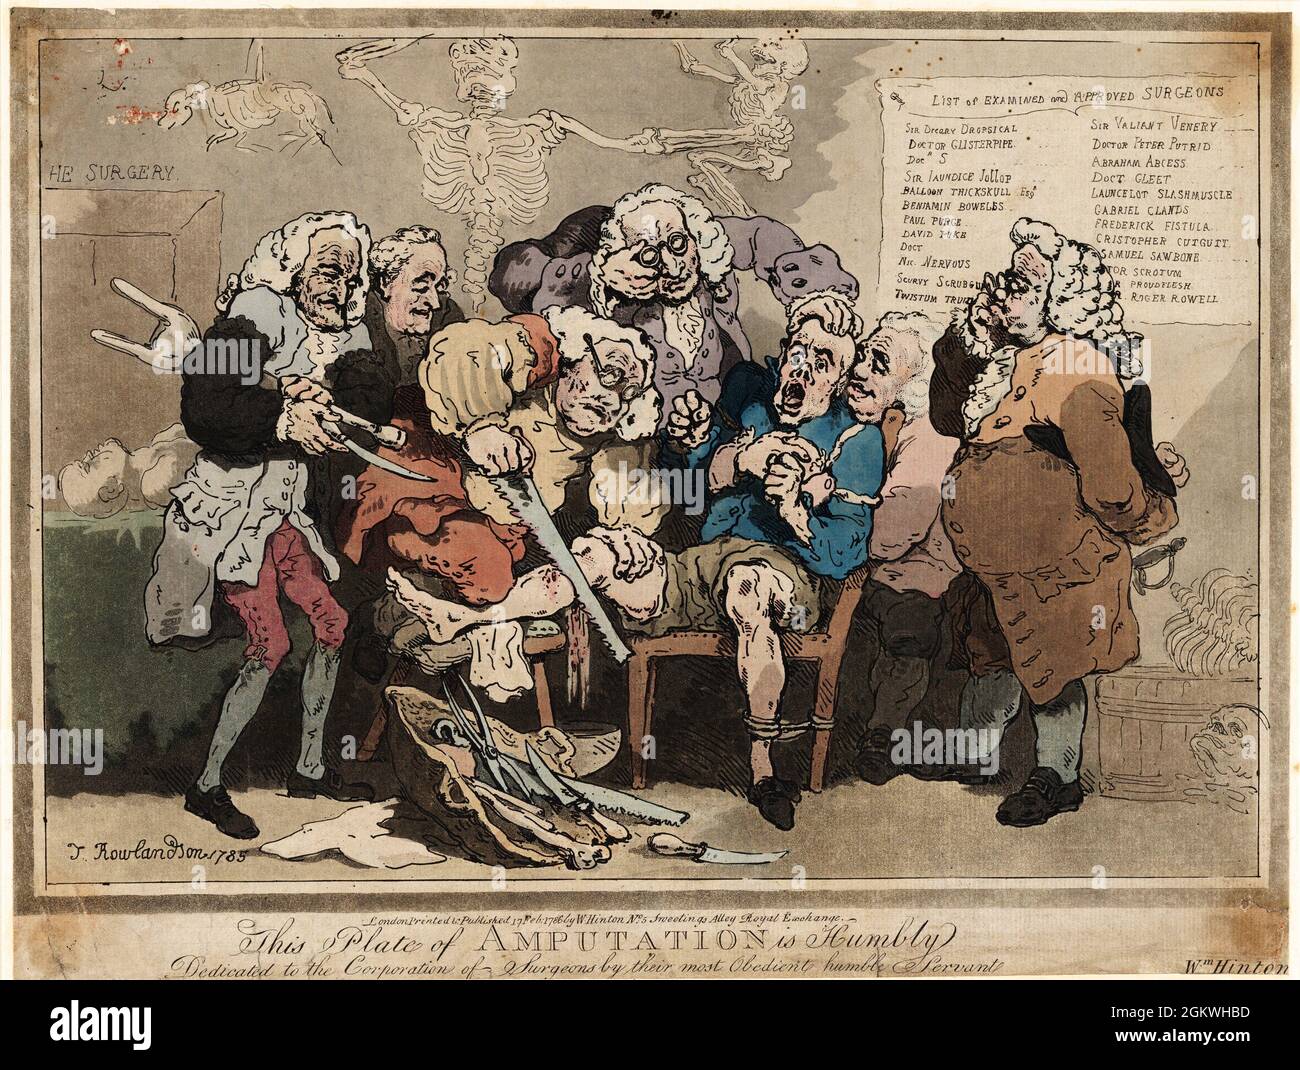 Amputazione 1786 artista: Thomas Rowlandson (1756-1827) artista e caricaturista inglese dell'era georgiana. Osservatore sociale, è stato un artista prolifico e tipografo. Credit: Thomas Rowlandson/Alamy Foto Stock